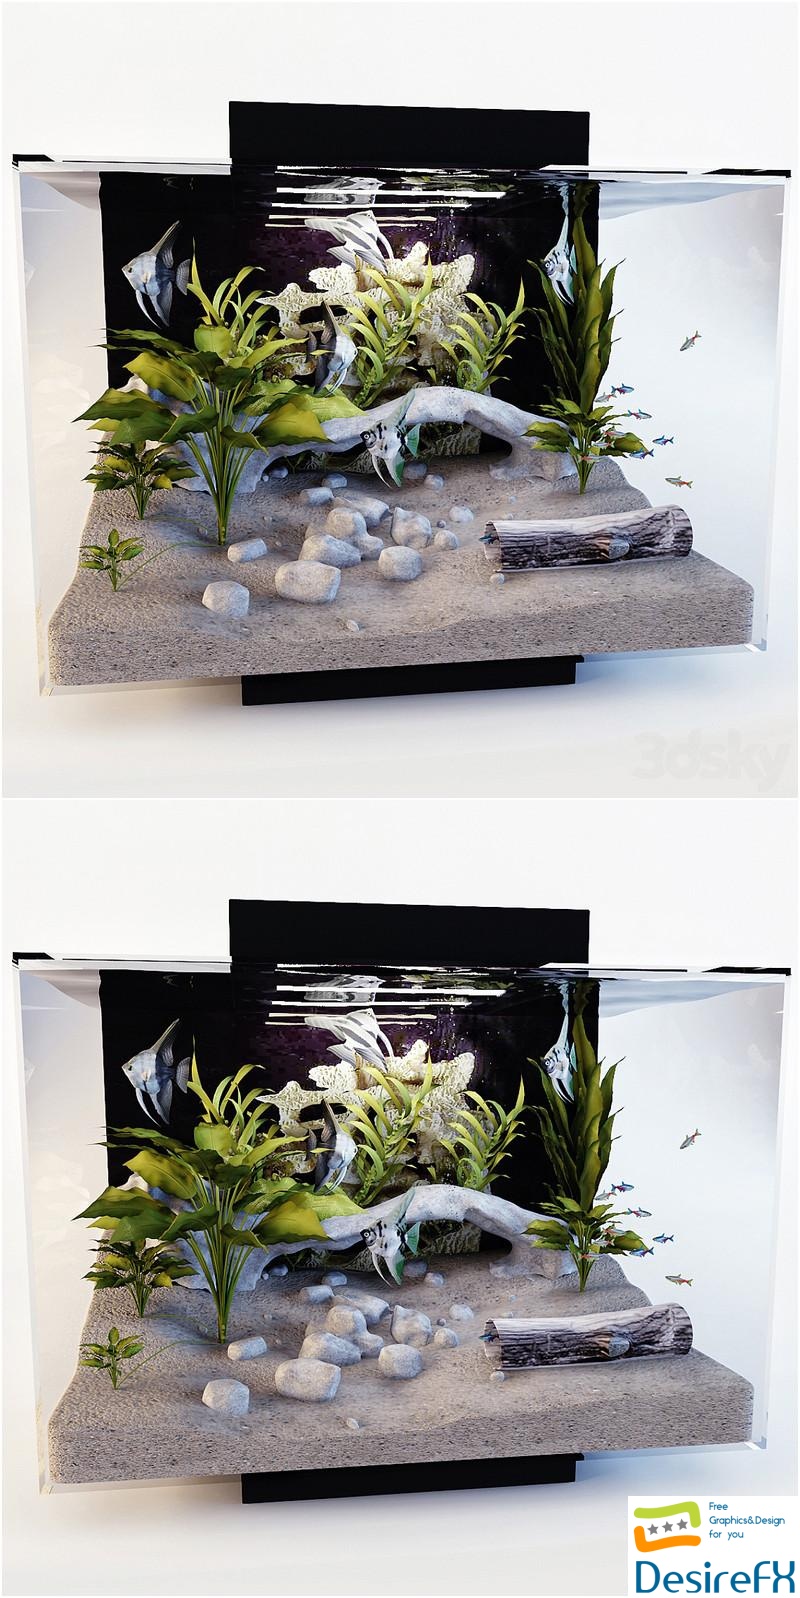 Aquarium 3D Model